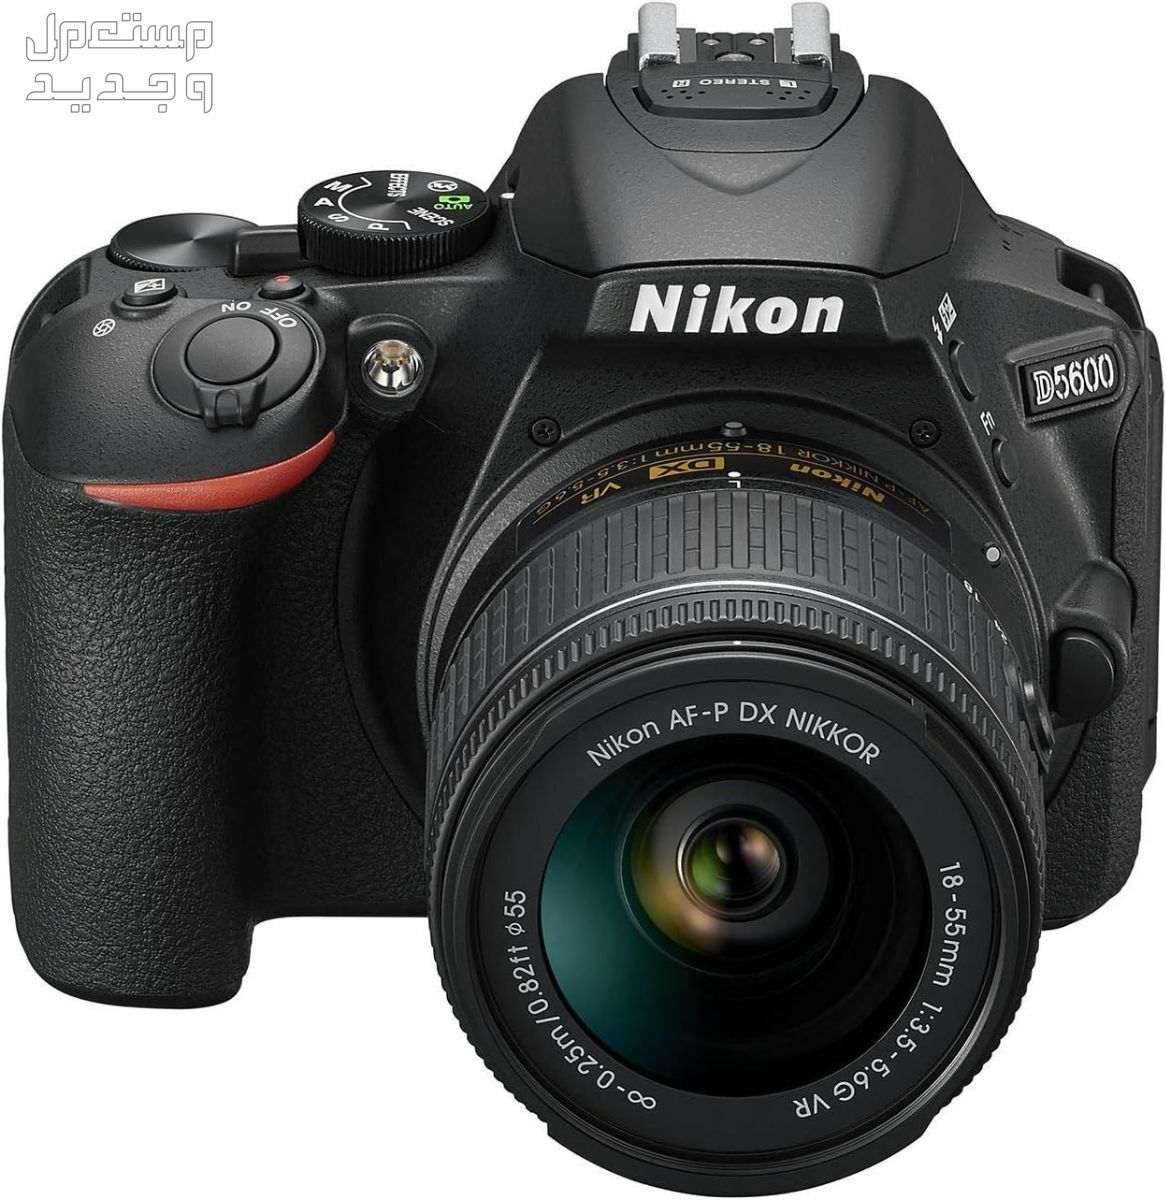 10 كاميرات تصوير ماركات عالمية بأسعار رخيصة في ليبيا سعر كاميرا Nikon D5600